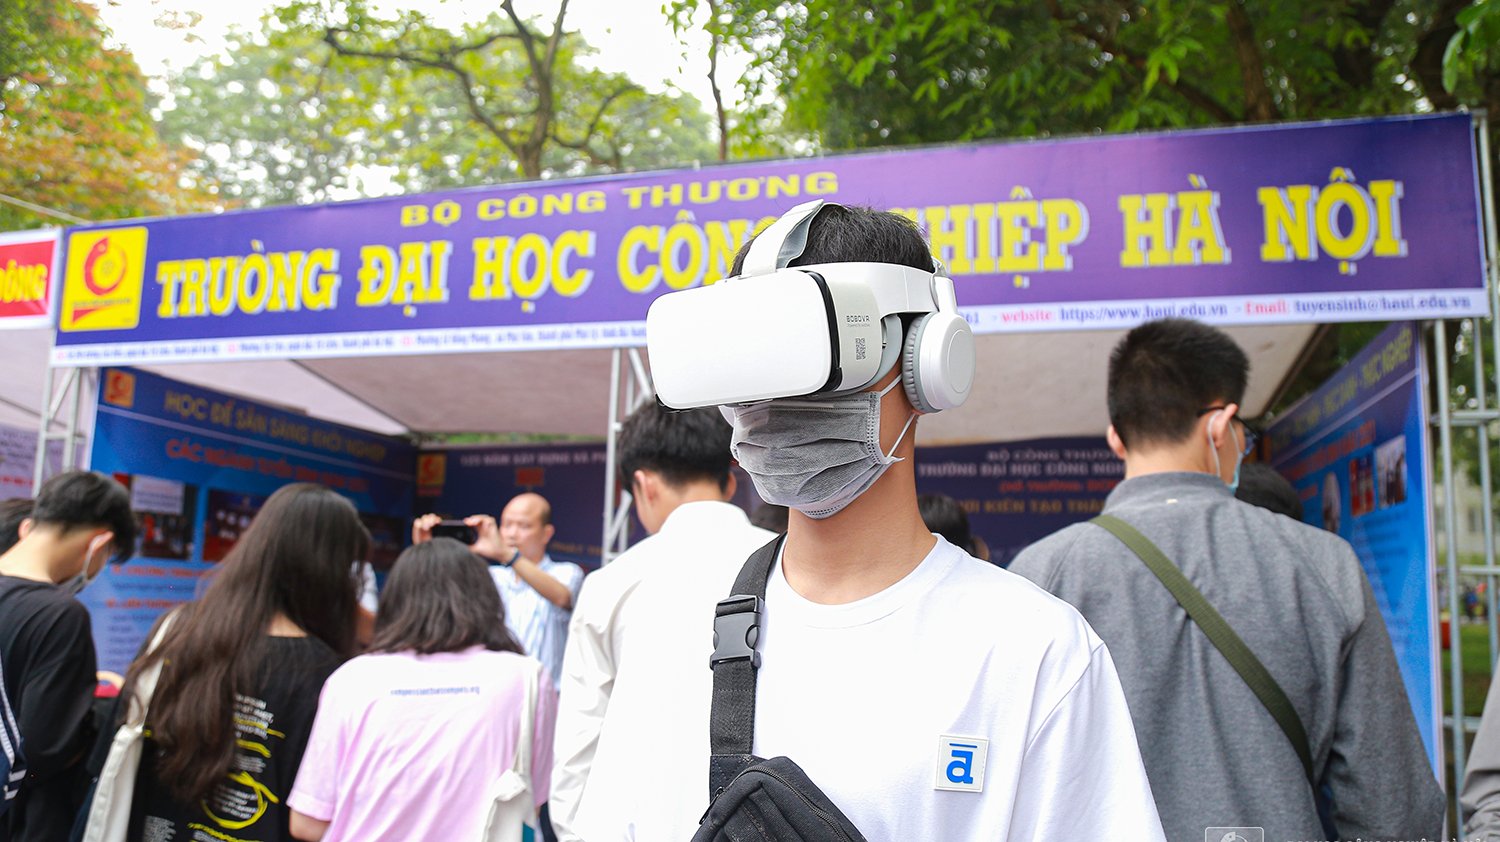 Trung tâm truyền thông và Quan hệ công chúng xây dựng video 360 độ toàn cảnh Đại học Công nghiệp Hà Nội 